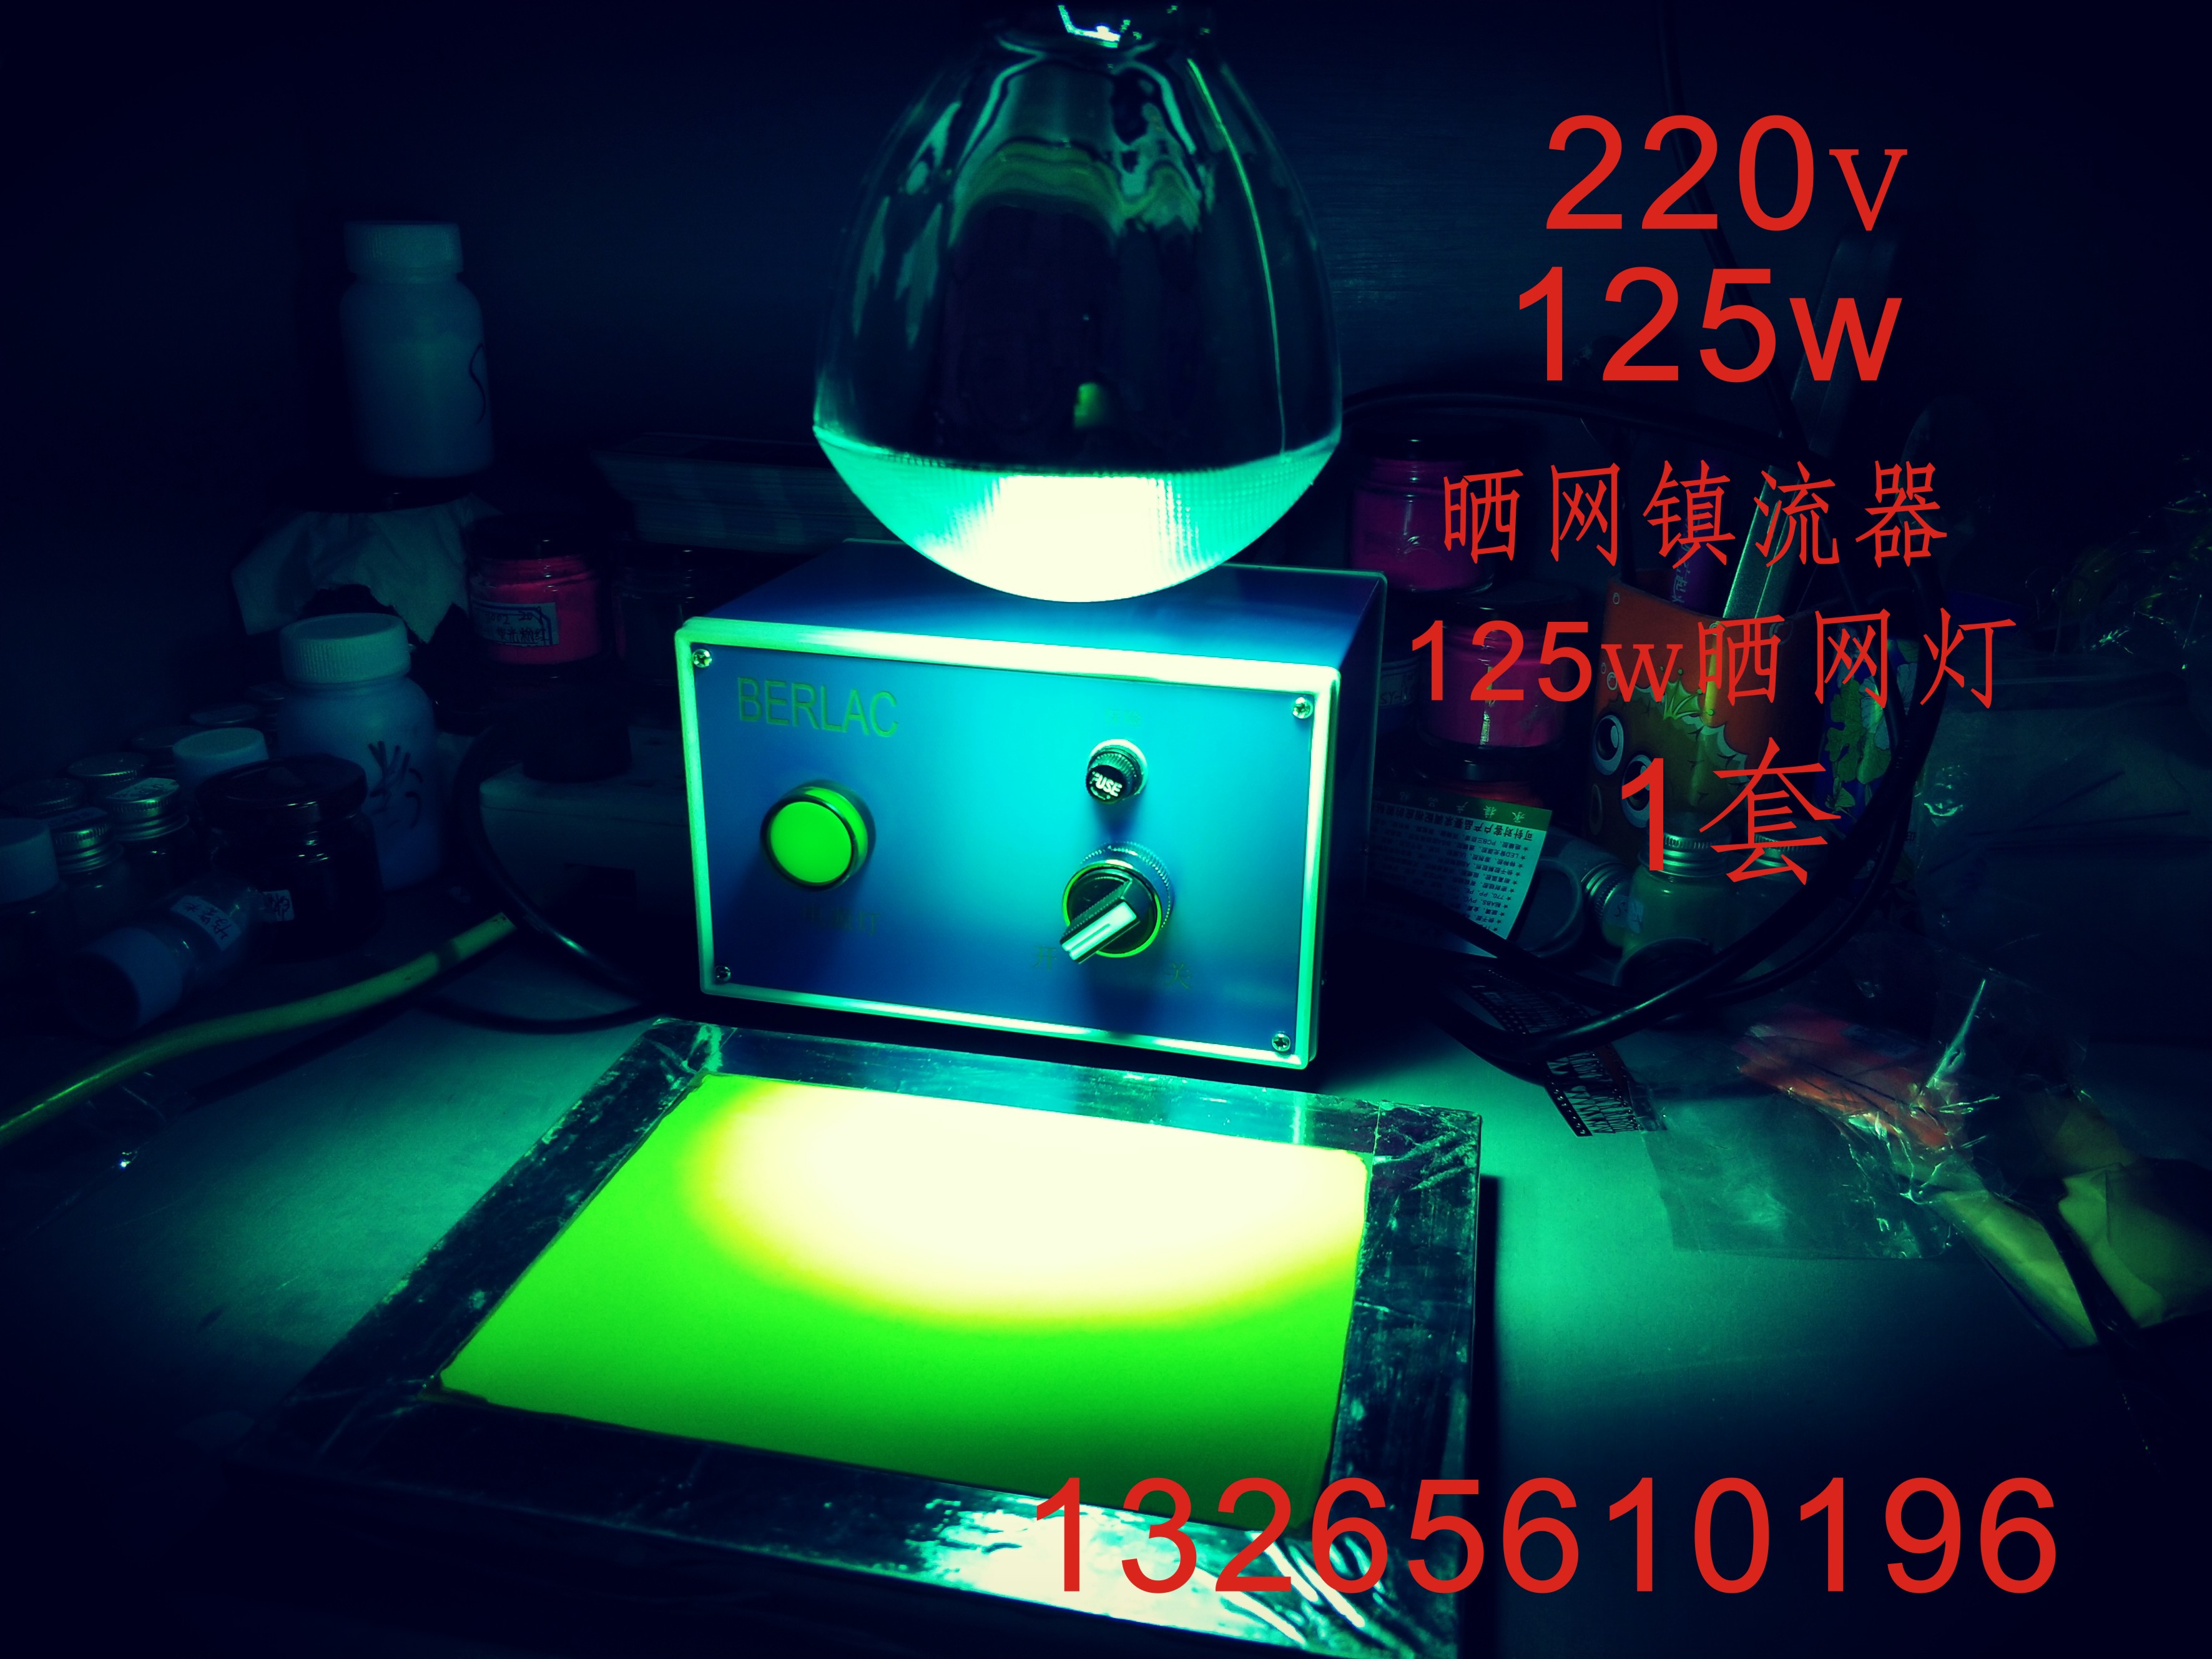 深圳市125w晒网灯厂家125w紫外线灯泡 晒网灯 晒板 125w晒网灯